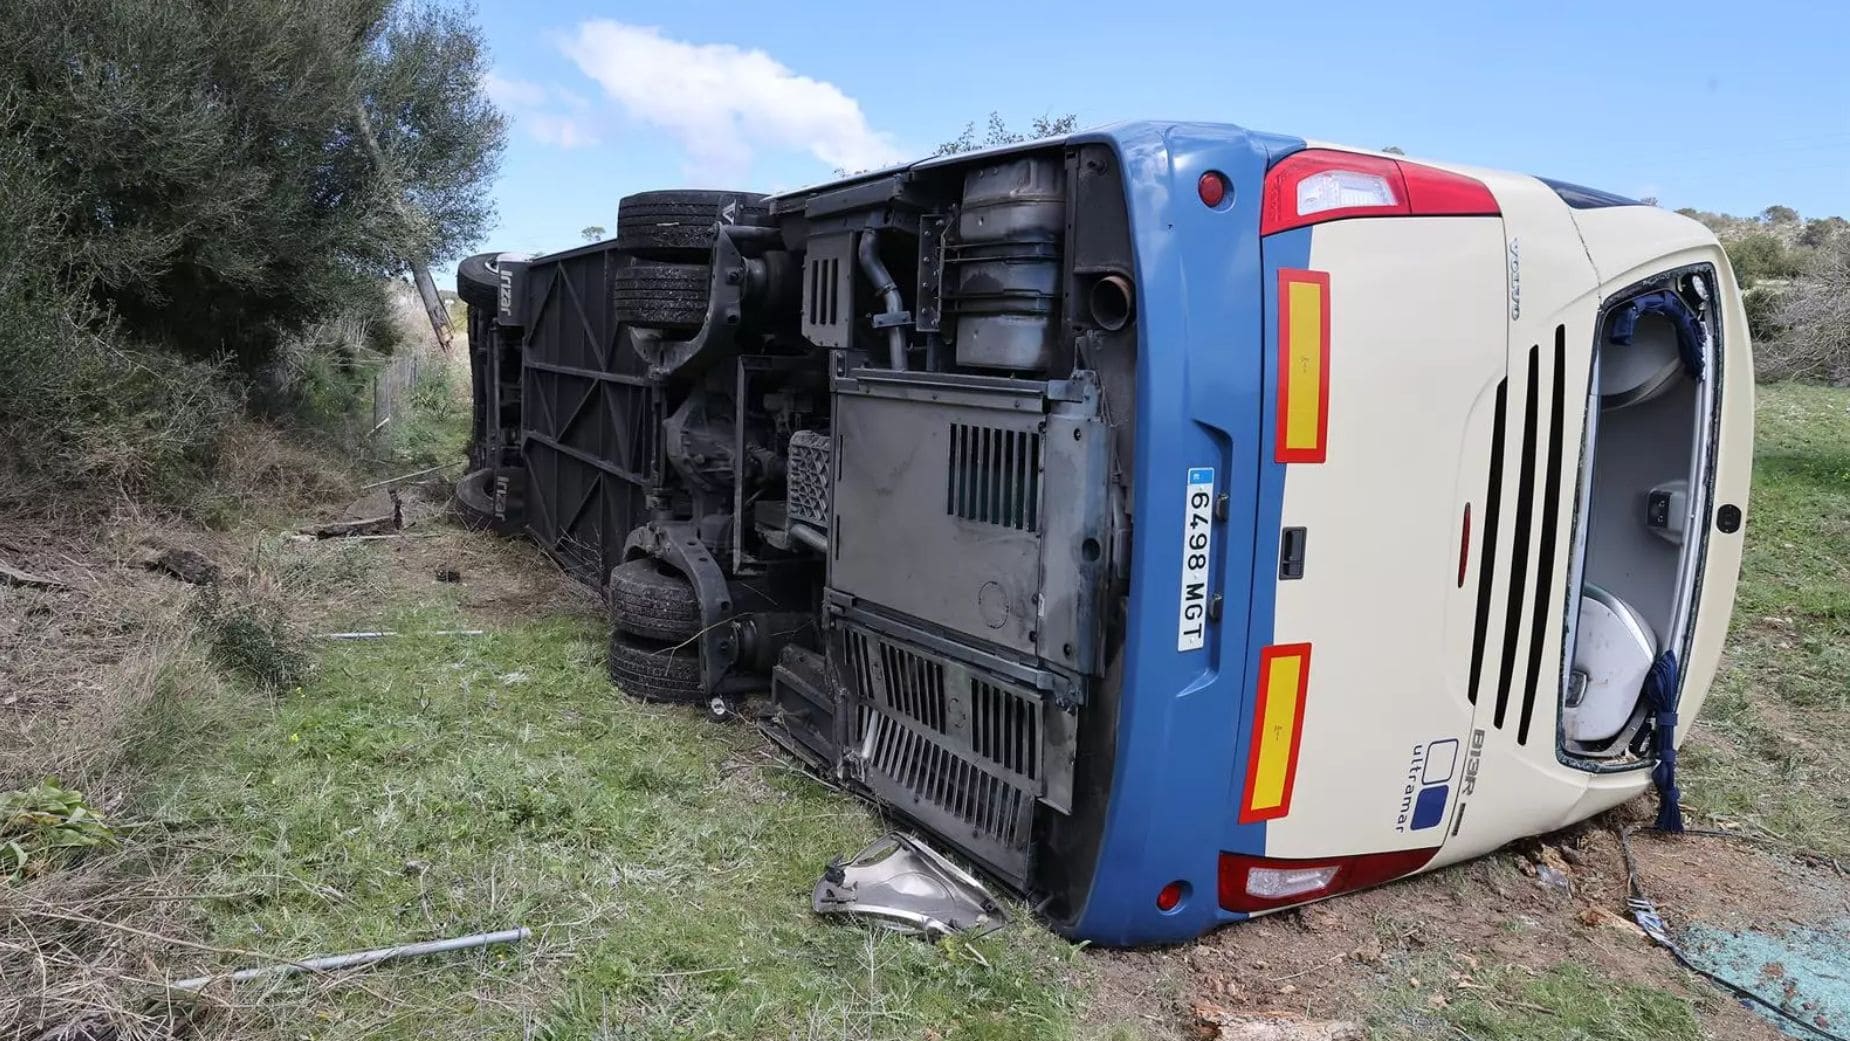 Autobús del IMSERSO que ha sufrido el accidente | EUROPAPRESS